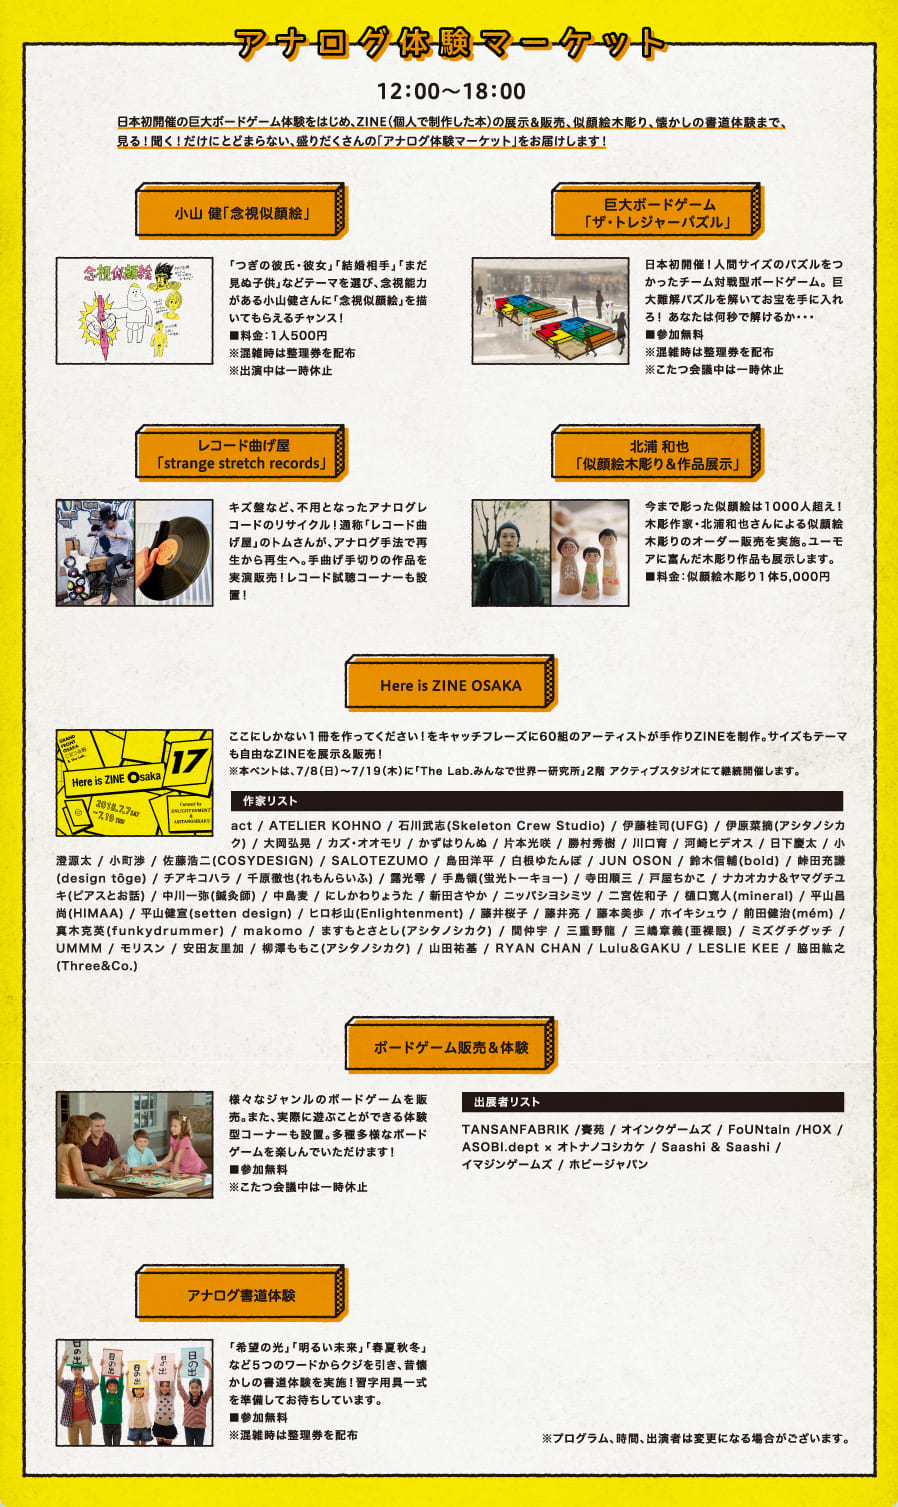 アナログ体験マーケット　12:00～18:00　日本初開催の巨大ボードゲーム体験をはじめ、ZINE（個人で制作した本）の展示＆販売、似顔絵木彫り、懐かしの書道体験まで、見る！聞く！だけにとどまらない、盛りだくさんの「アナログ体験マーケット」をお届けします！